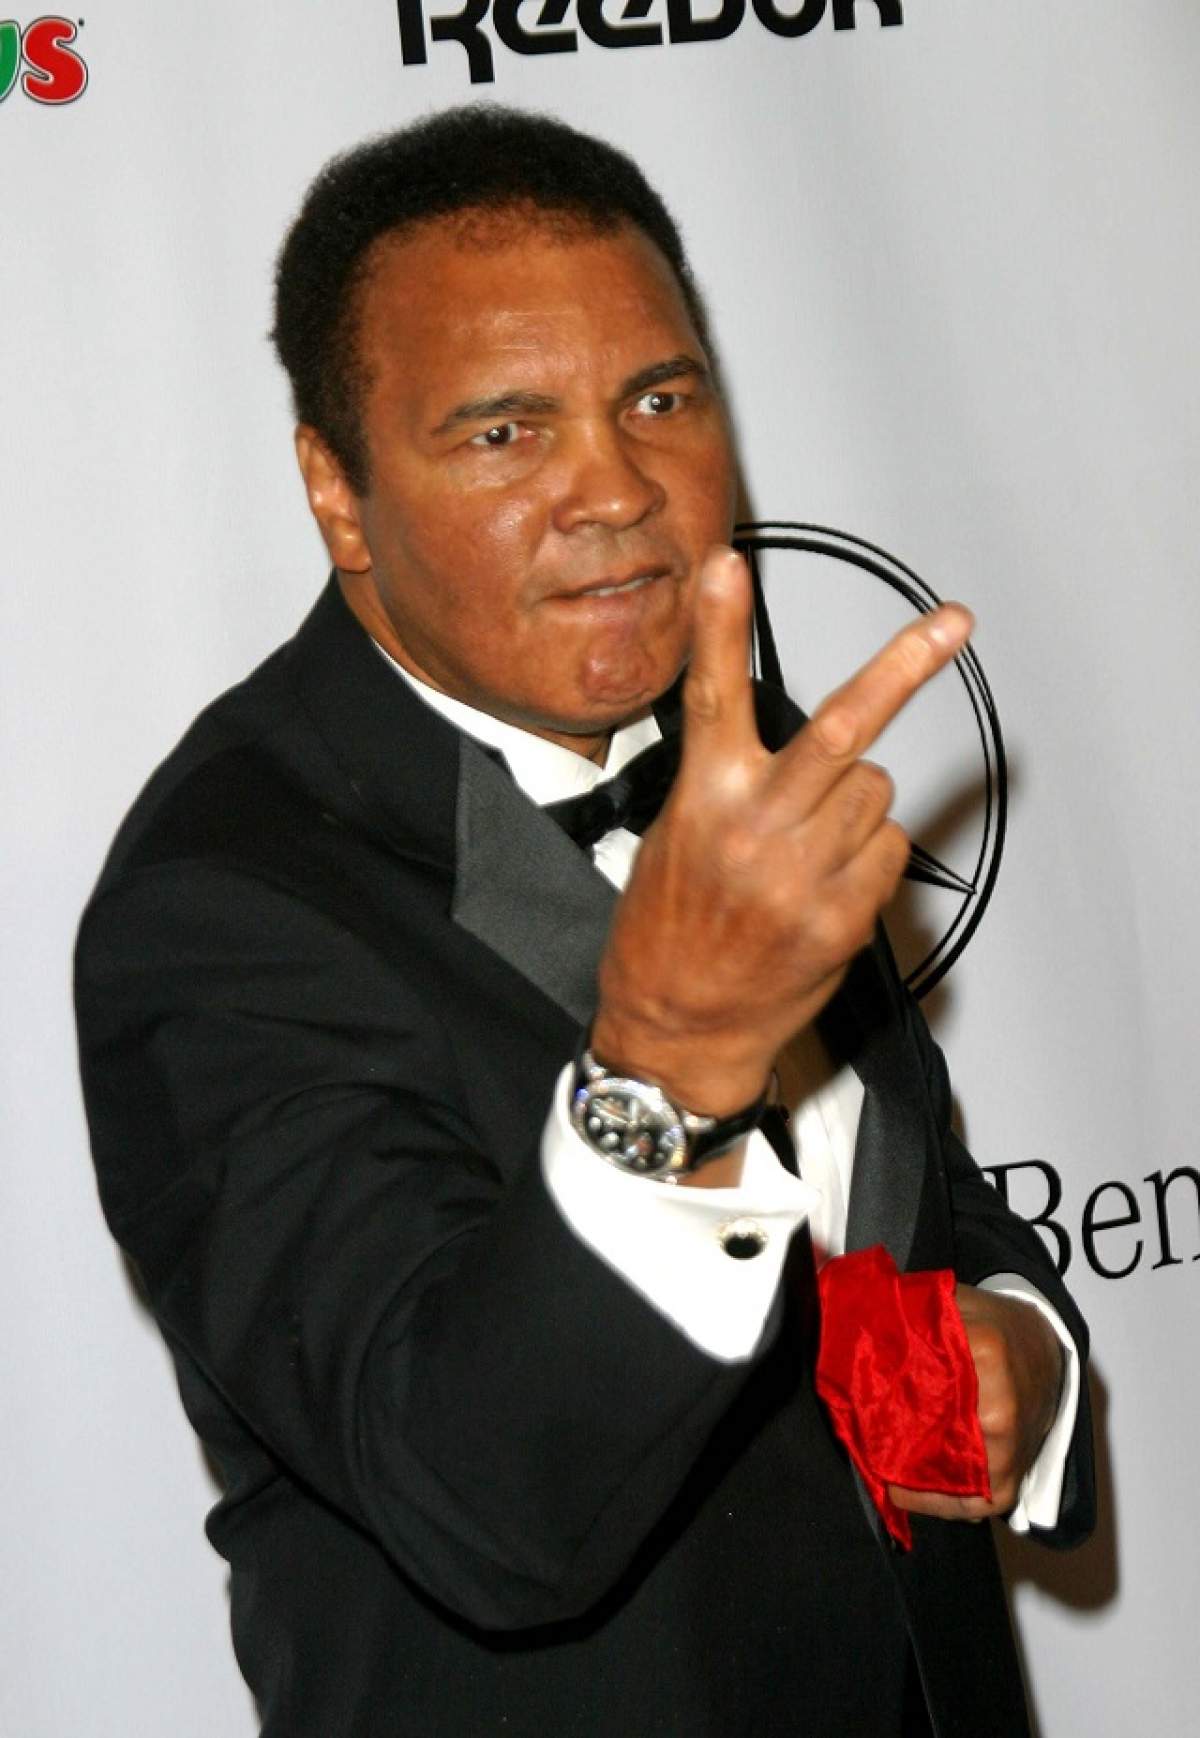 Ultima poză cu Muhammad Ali în viaţă a fost făcută publică! Mesajul care însoţeşte imaginea te va emoţiona până la lacrimi